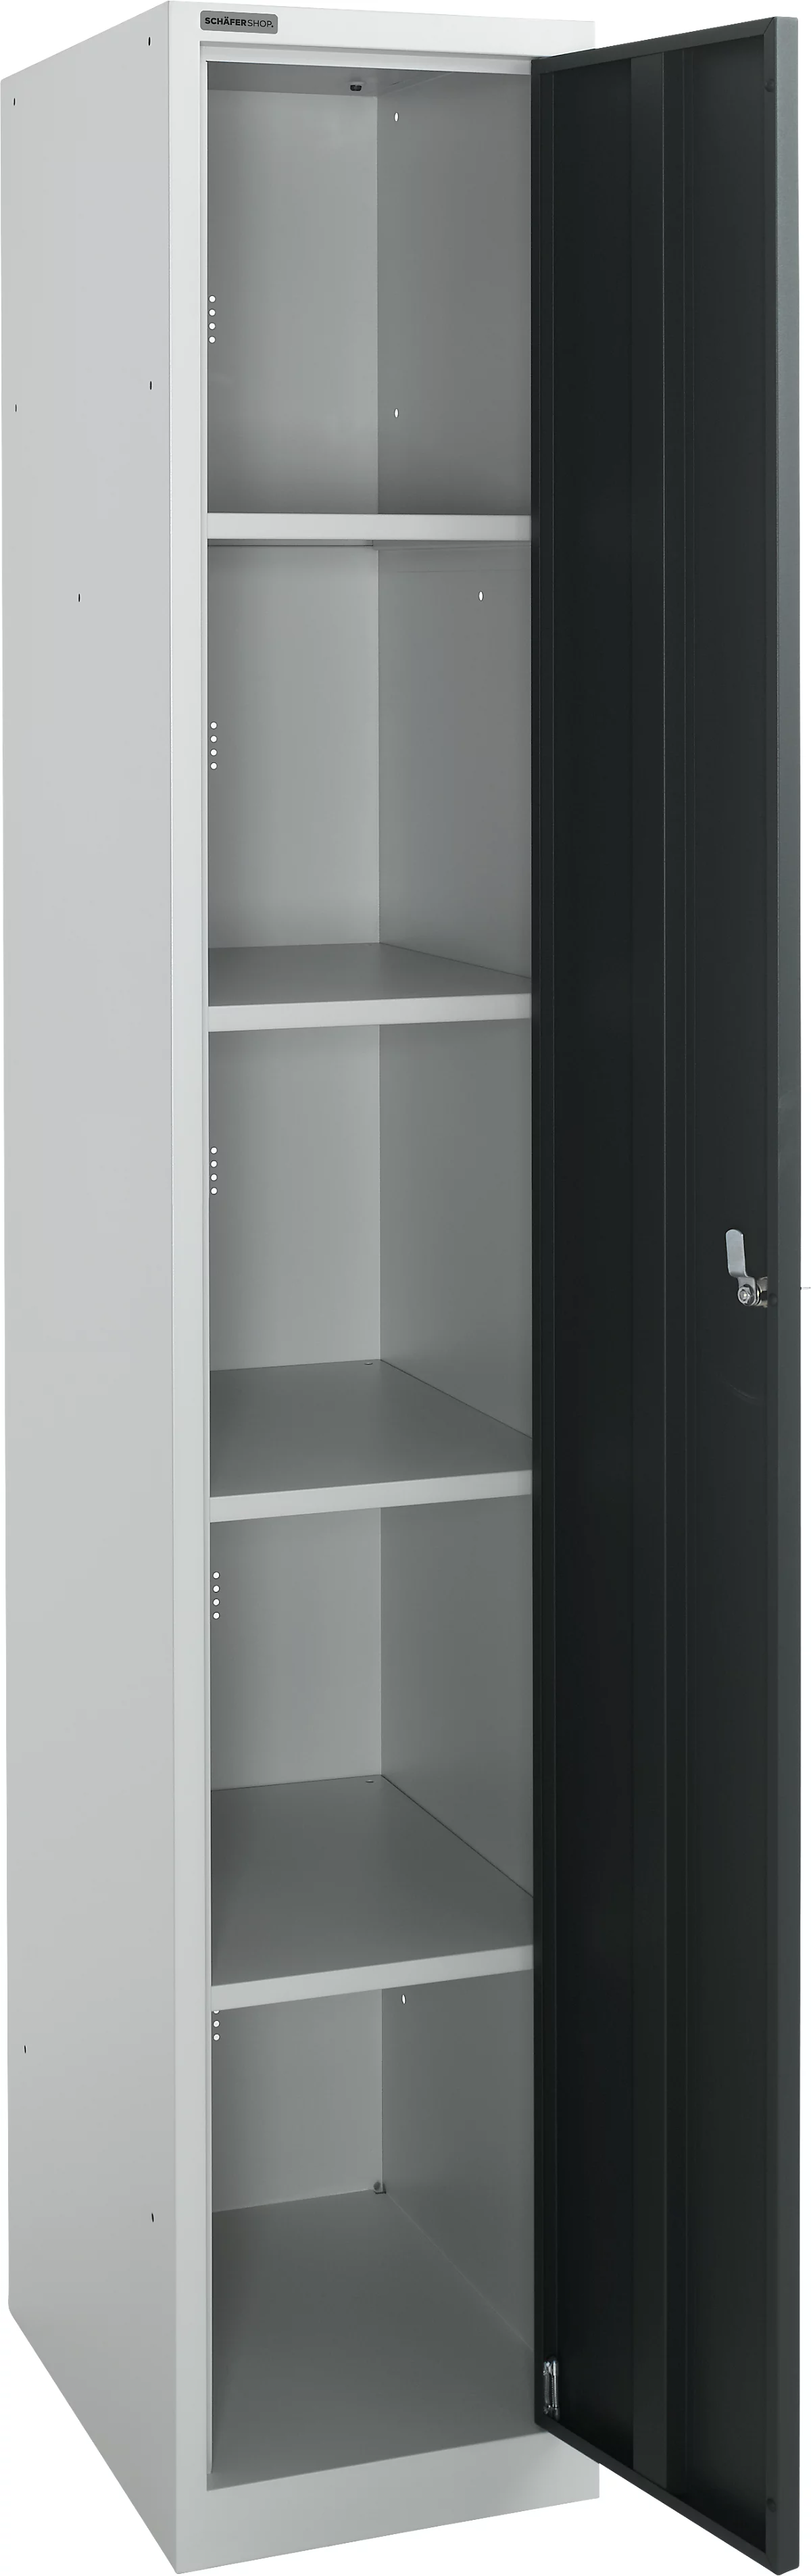 Schäfer Shop Select Armario de guardarropa, 1 compartimento de 350 mm de ancho, 5 compartimentos con 4 estantes, con cerradura, aluminio blanco/antracita